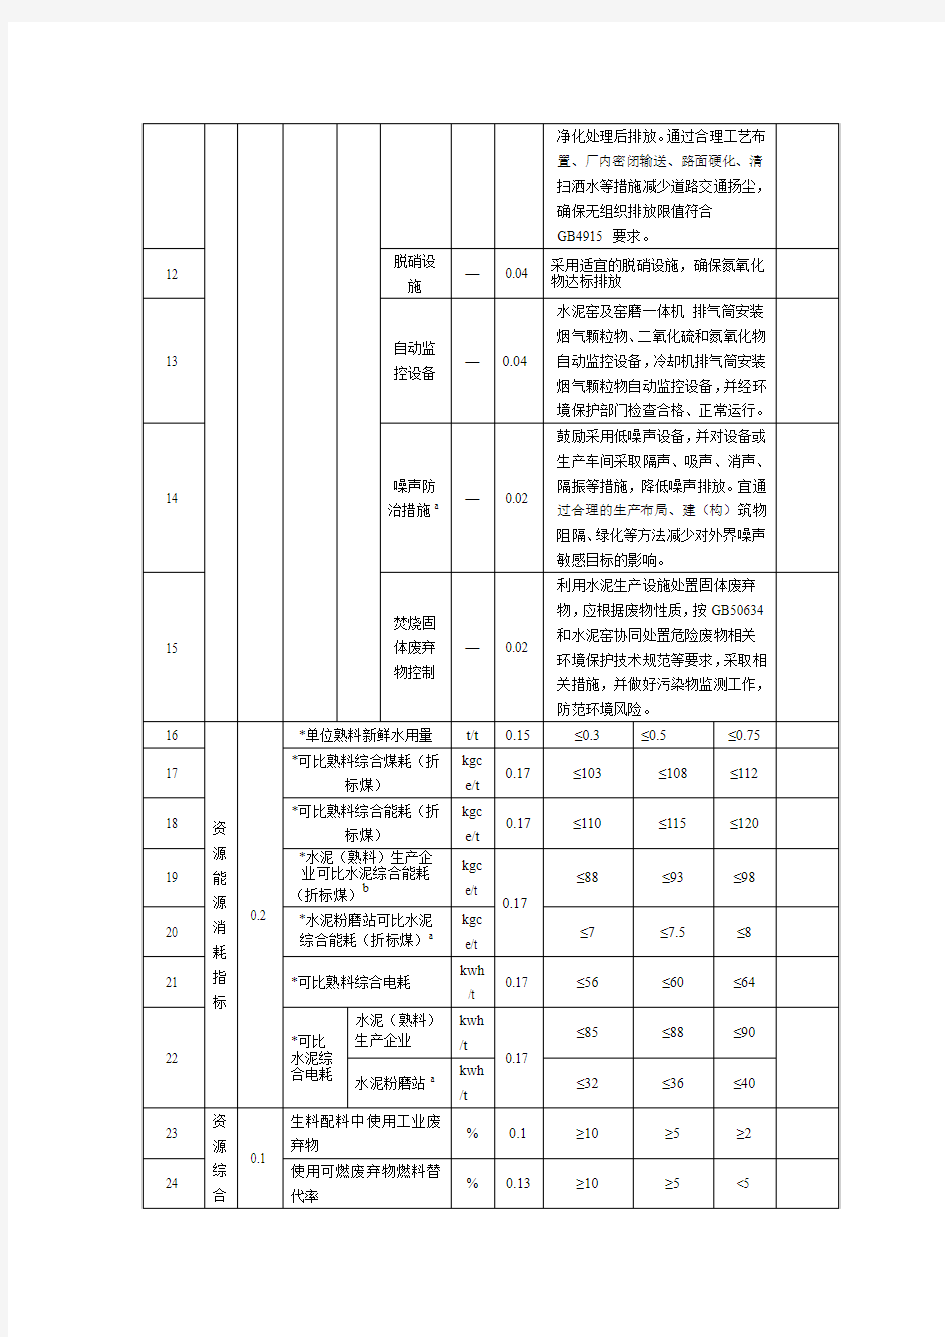 水泥行业清洁生产评价指标表-2014